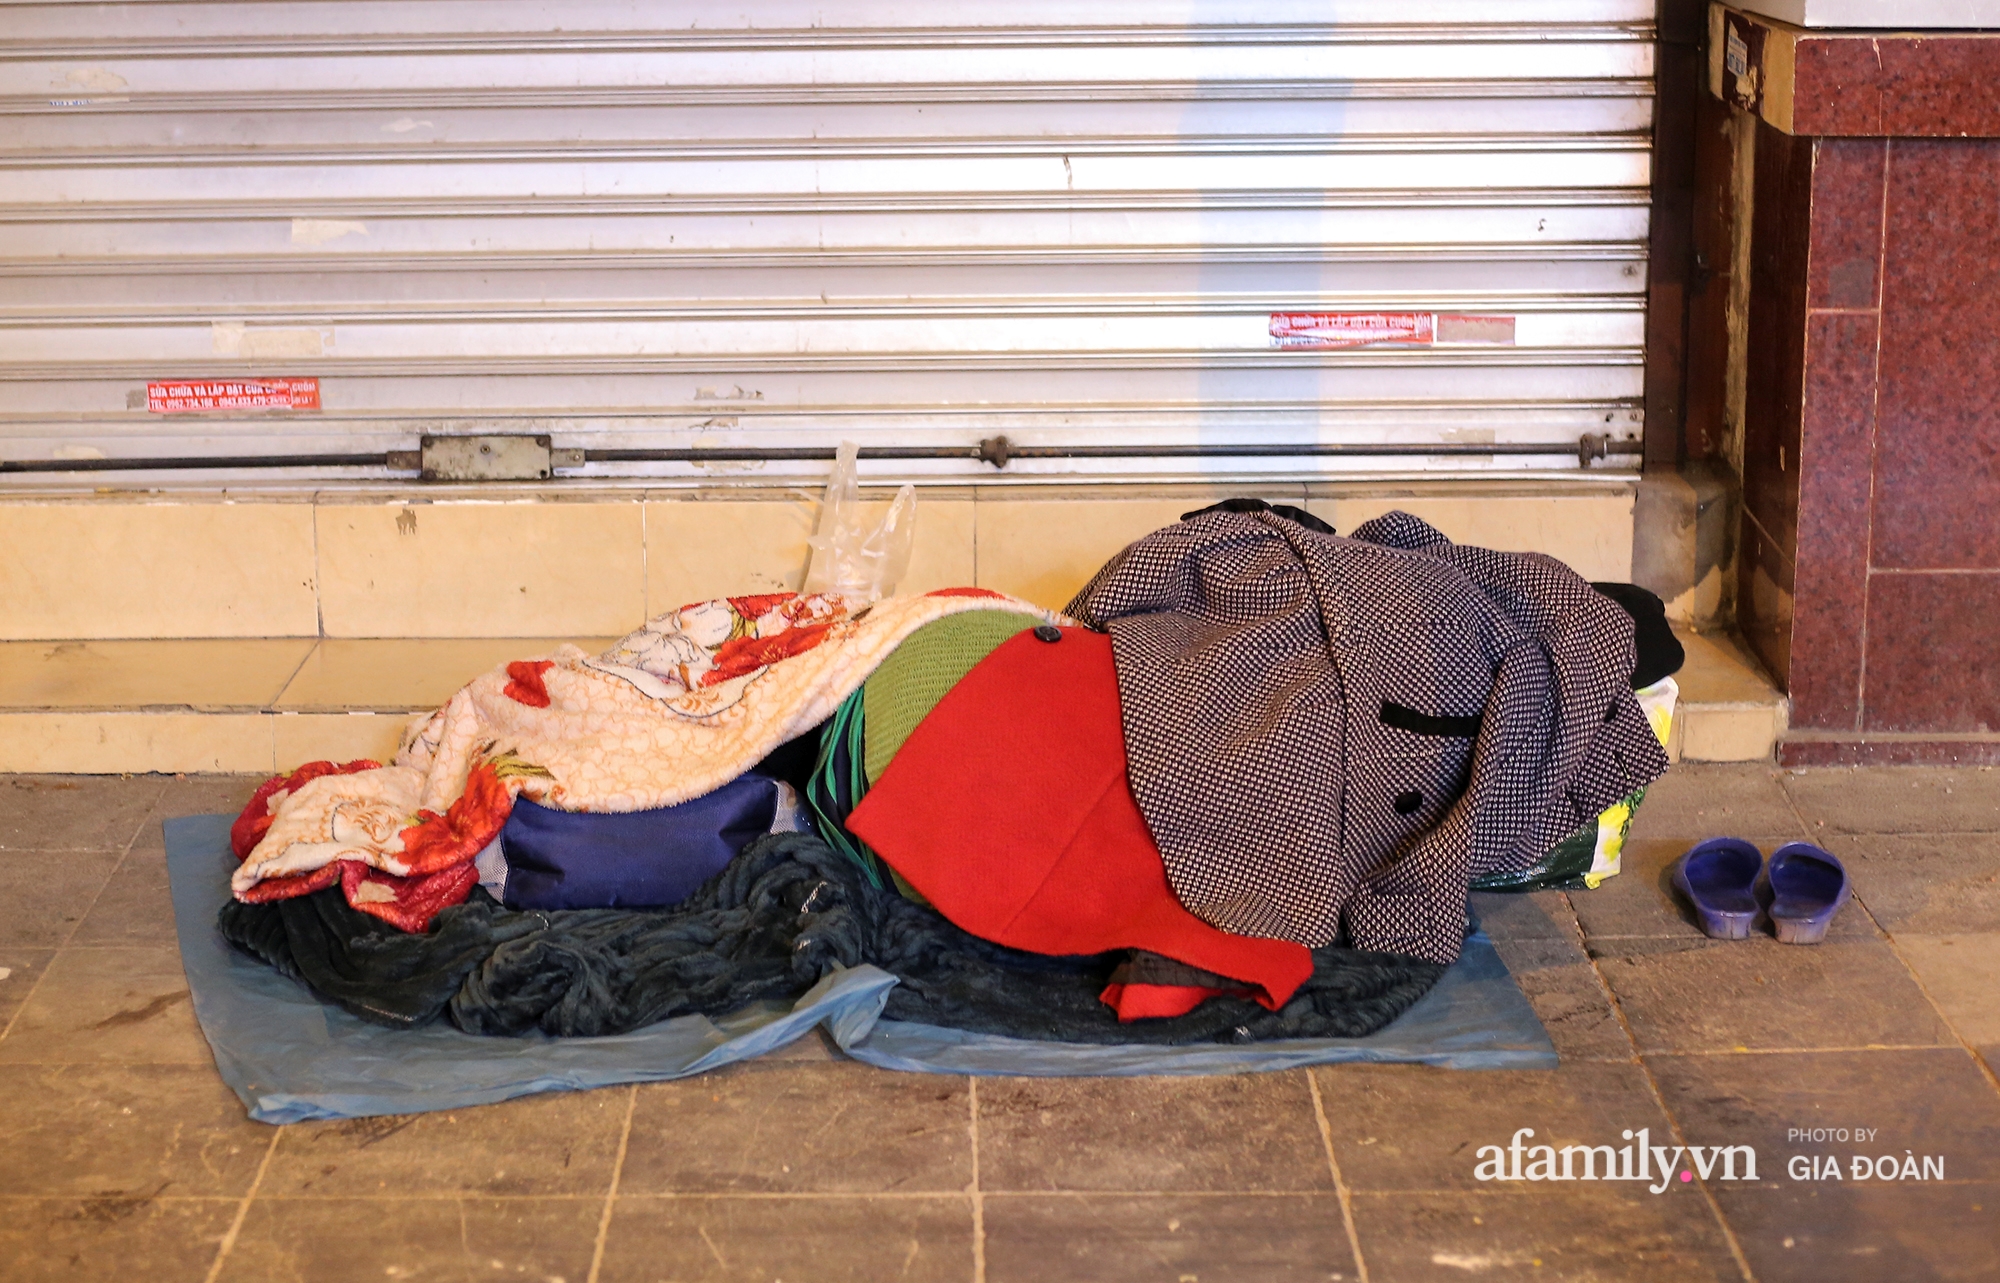 Người vô gia cư trong cái lạnh tê tái của Hà Nội: “Người ta có nhà để về, có con cháu quây quần, tôi mấy chục năm lang thang ngoài đường rồi cũng quen” - Ảnh 5.